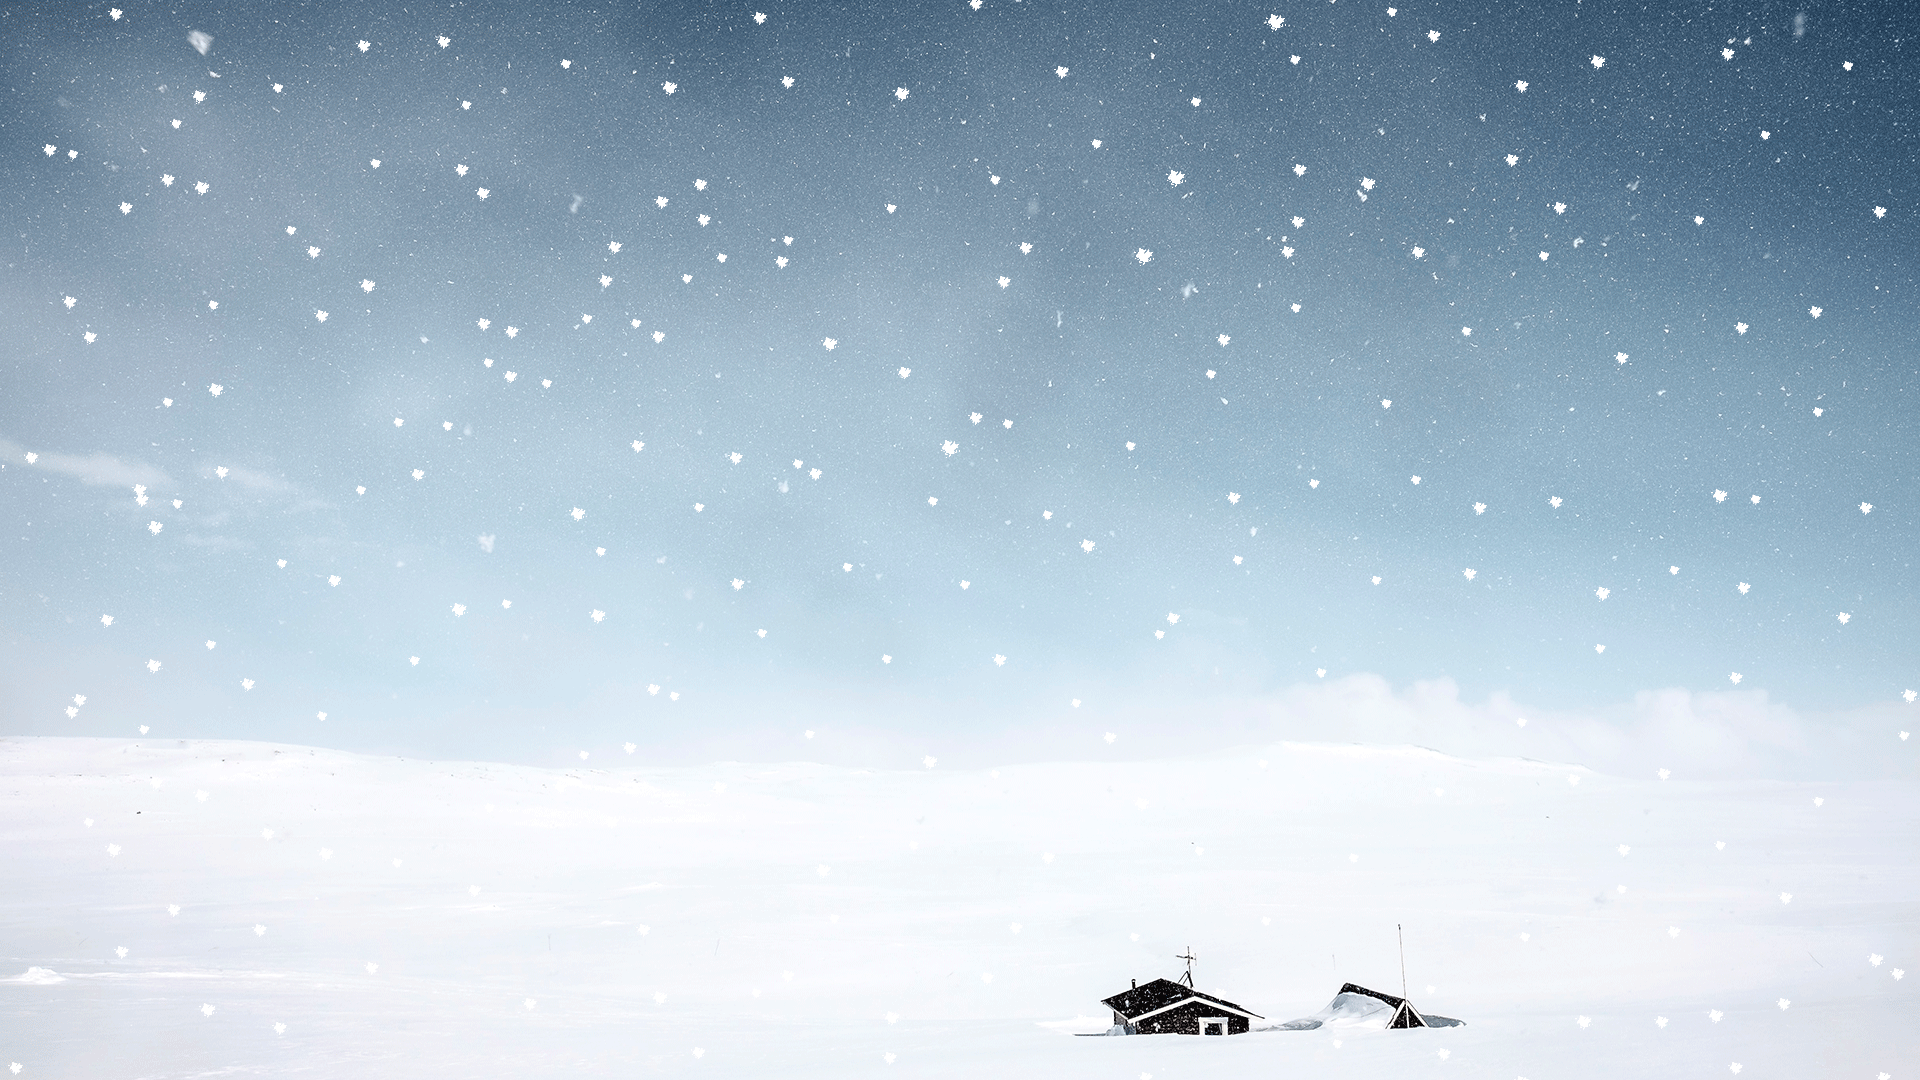 雪景壁纸动态图片